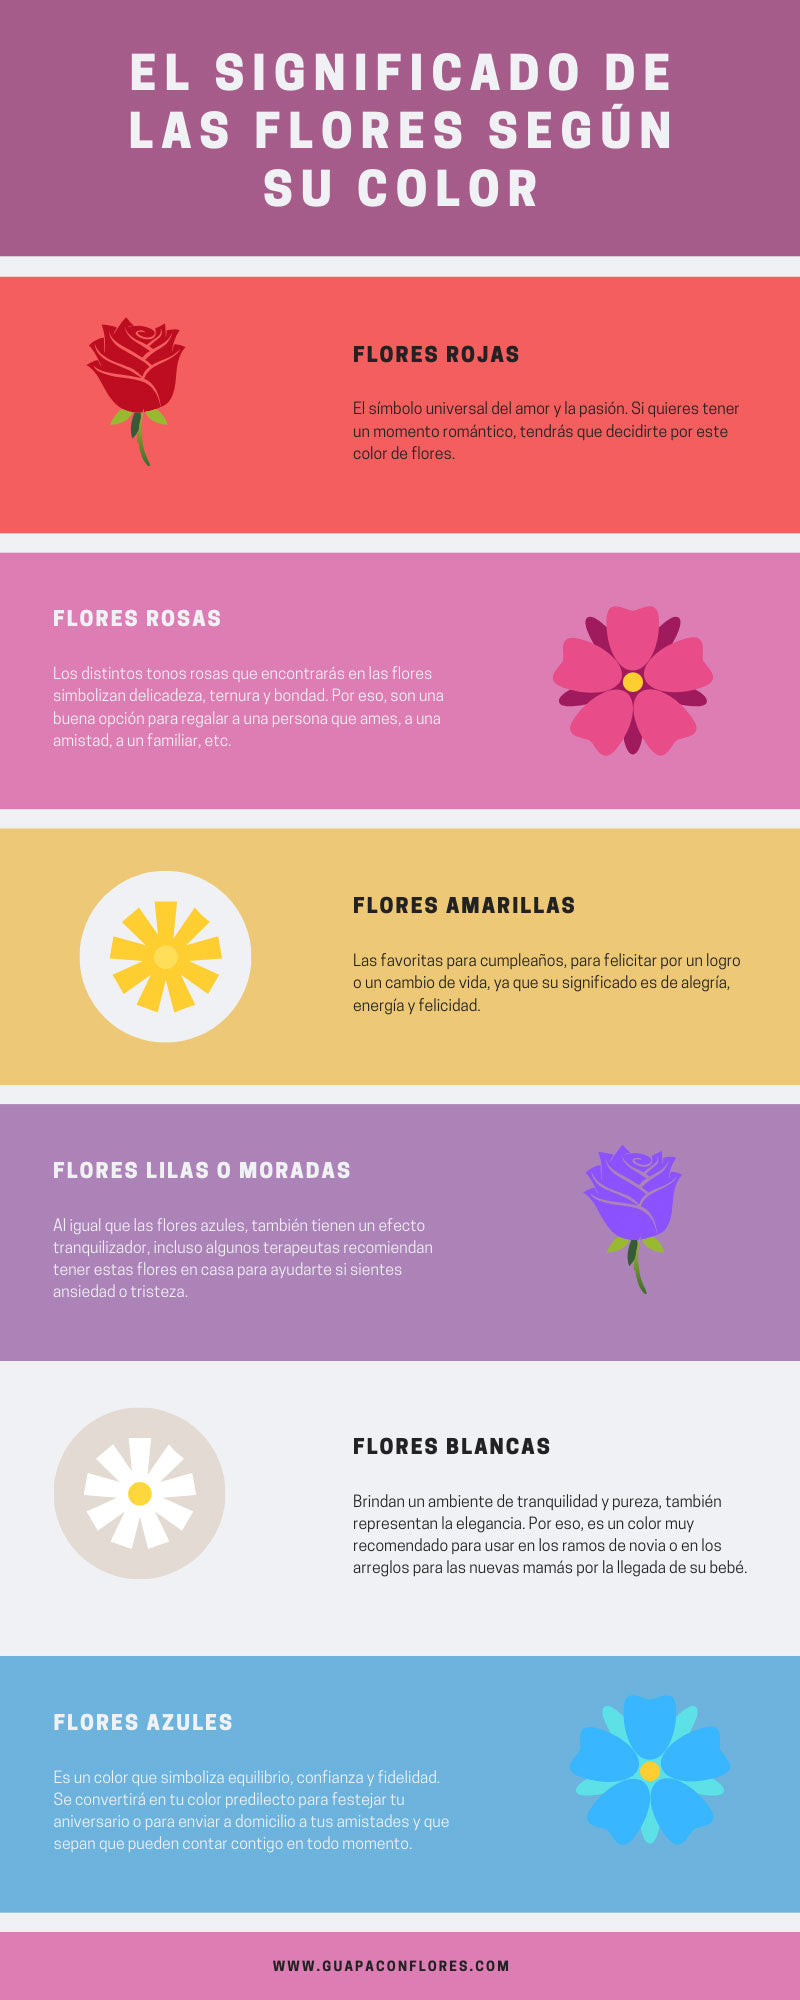 El significado de las flores según su color